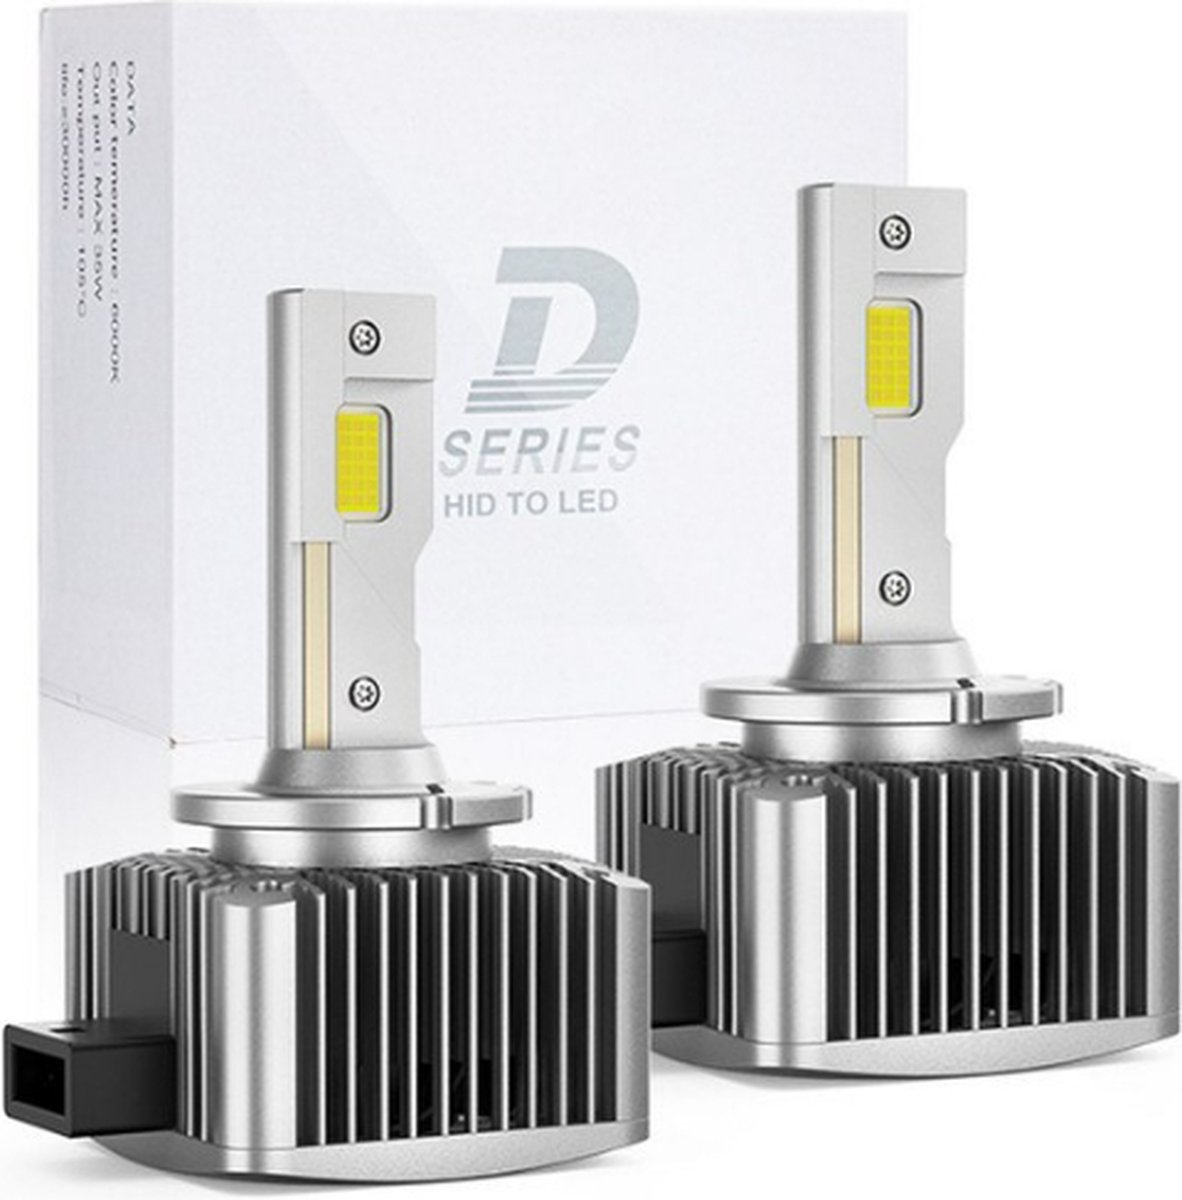 TLVX D2R Turbo LED lampen Canbus (set 2 stuks) / Plug and Play / 28.000 Lumen / + 200% meer licht / 6000k Helder Wit licht / CANBUS EMC / 90 Watt / D2R 35 watt HID Xenon vervanger / Dimlicht / Grootlicht / HID to LED / Koplampen / Autolampen / 12V